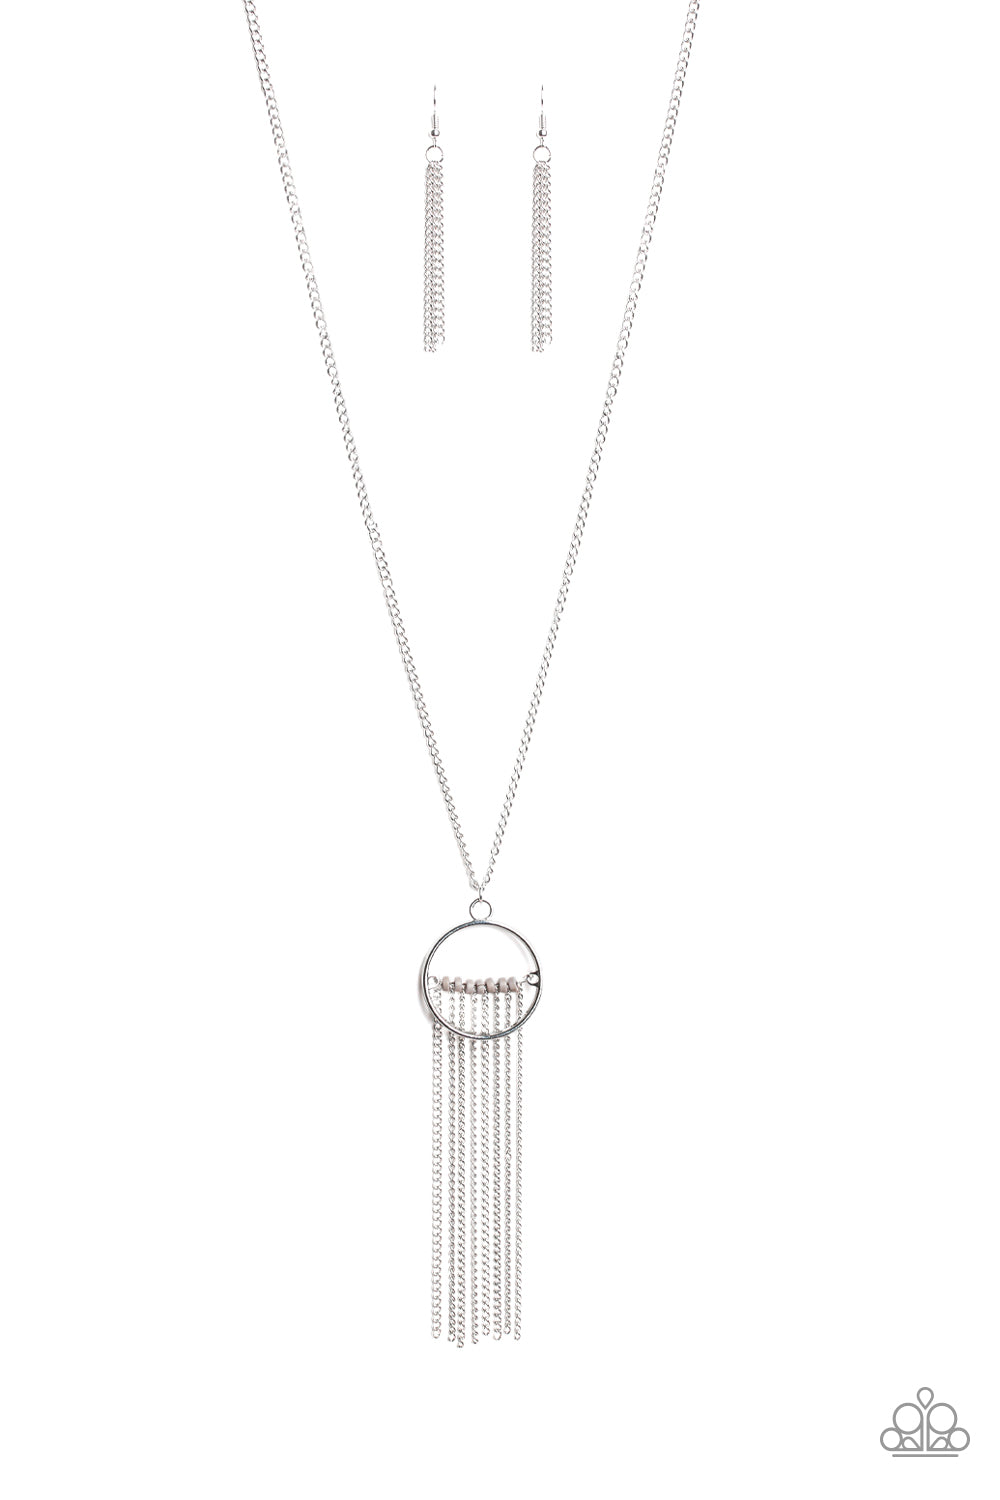 Terra Tassel-Silver Necklace